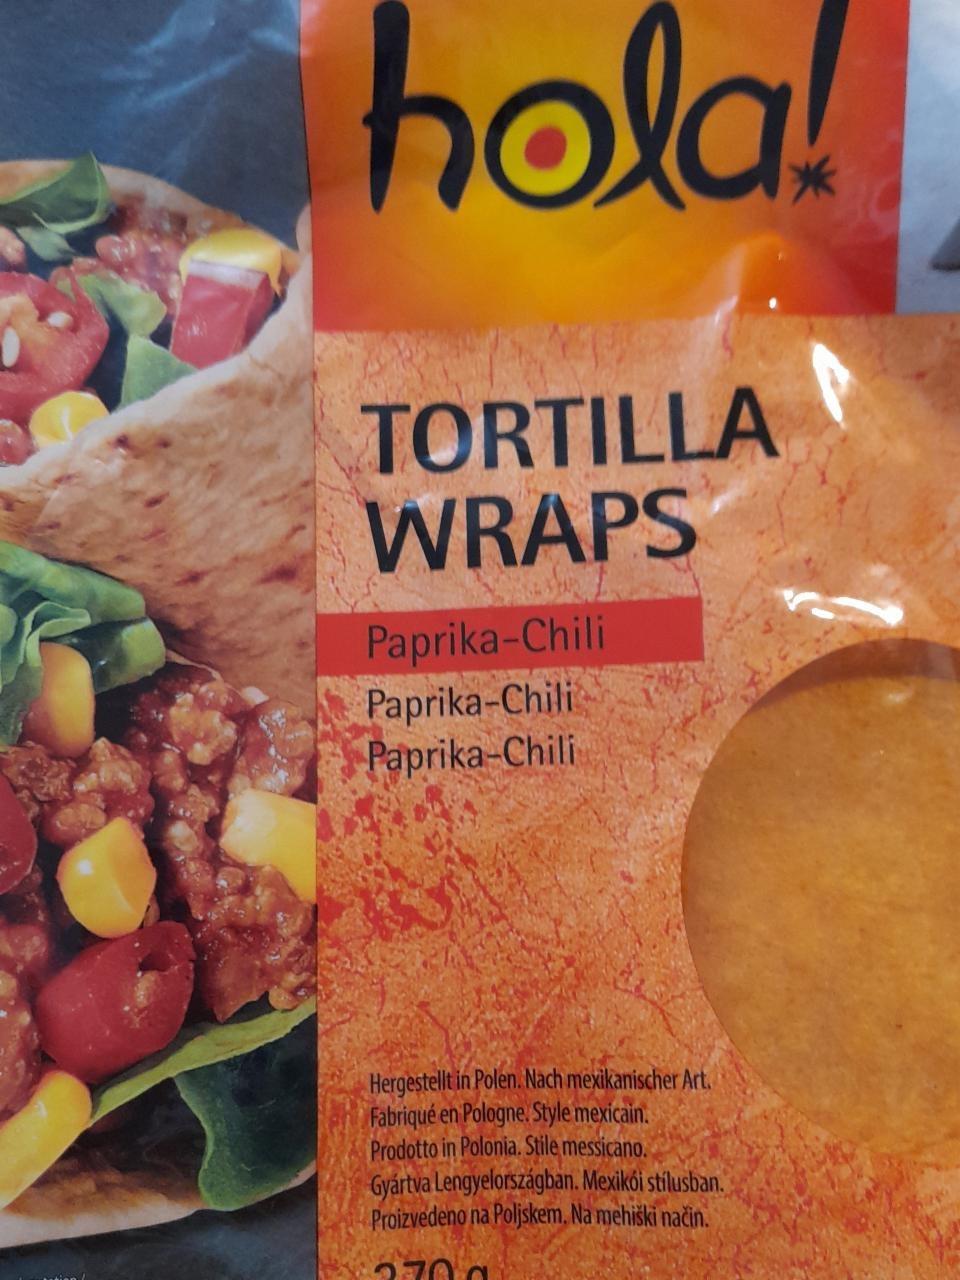 Képek - Tortilla wraps paprika-chili Hola!